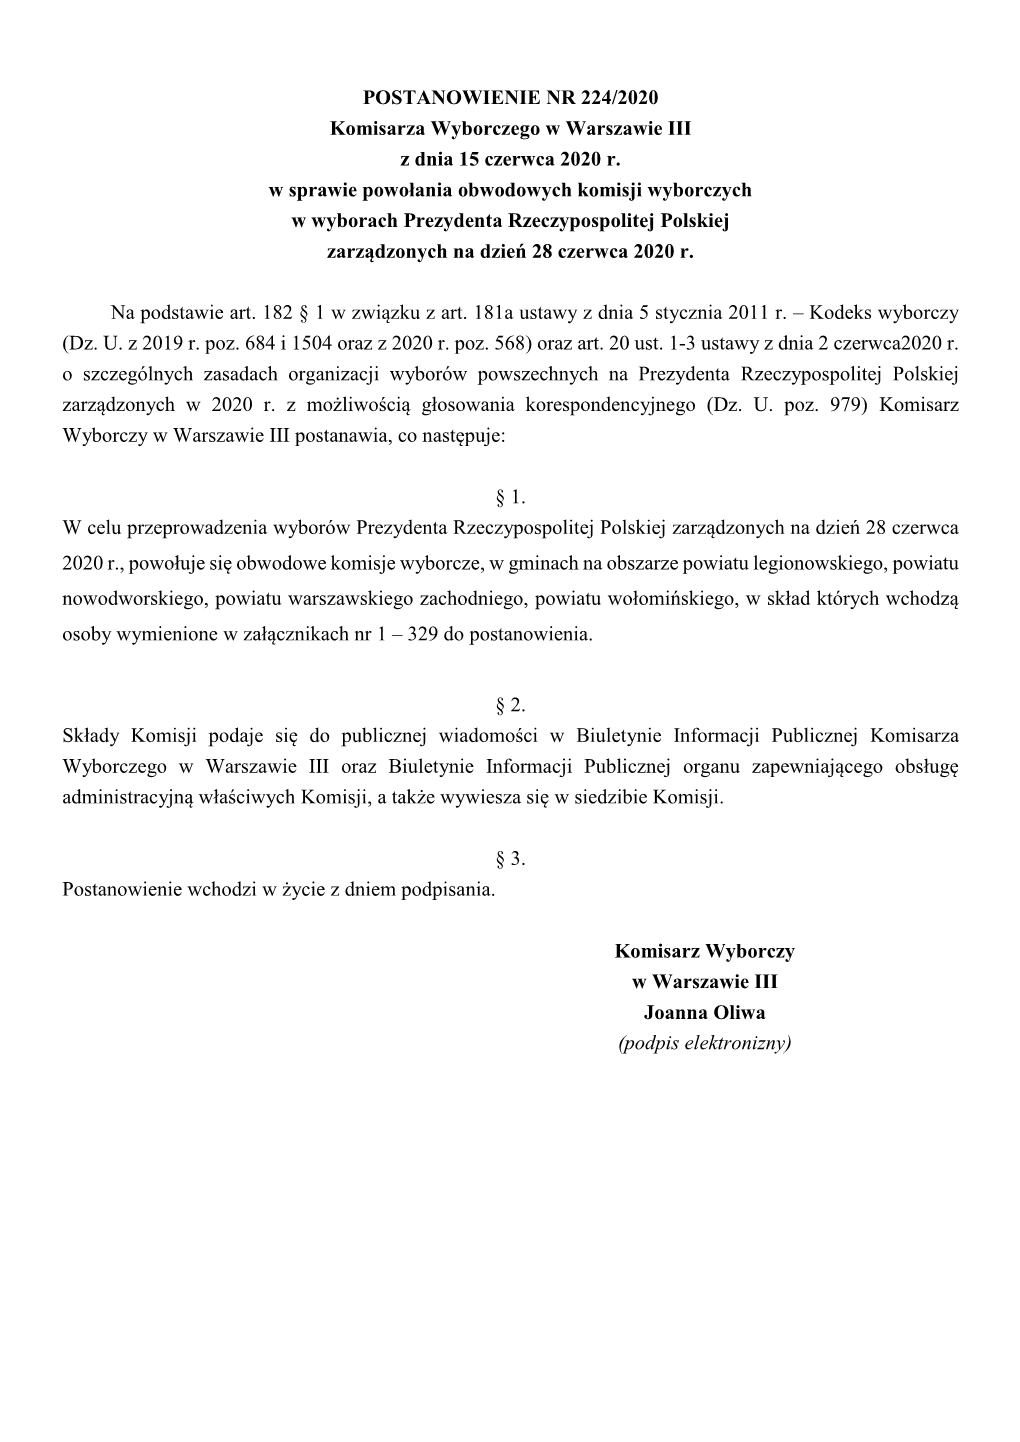 POSTANOWIENIE NR 224/2020 Komisarza Wyborczego W Warszawie III Z Dnia 15 Czerwca 2020 R